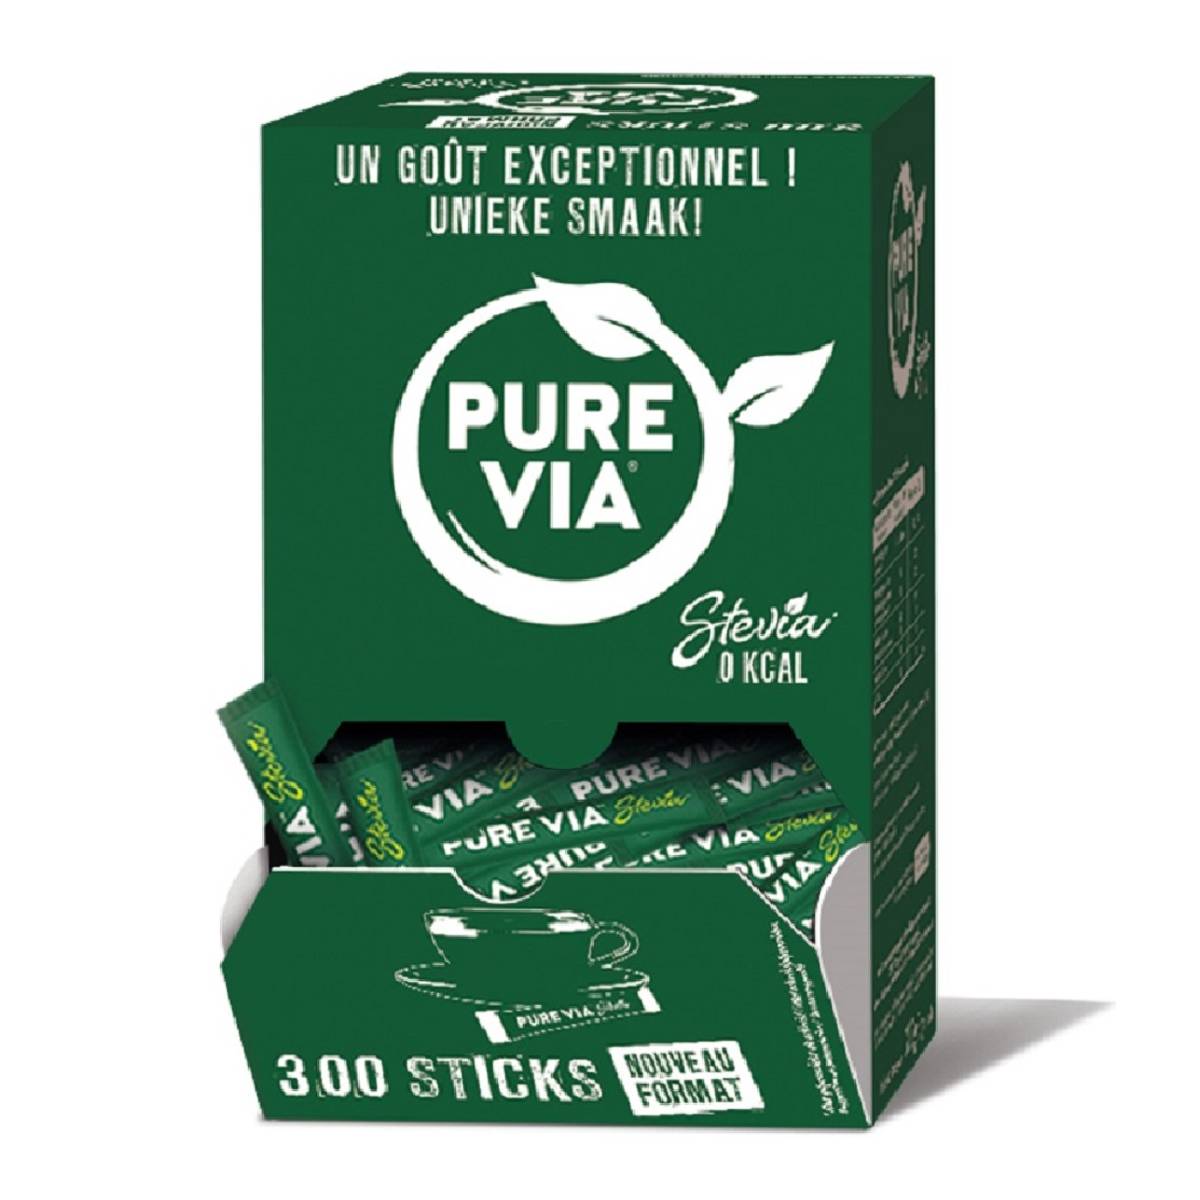 https://www.ekita-cafe.com/Files/25824/Img/13/stevia-pure-via-300-sticks-1200px.jpg